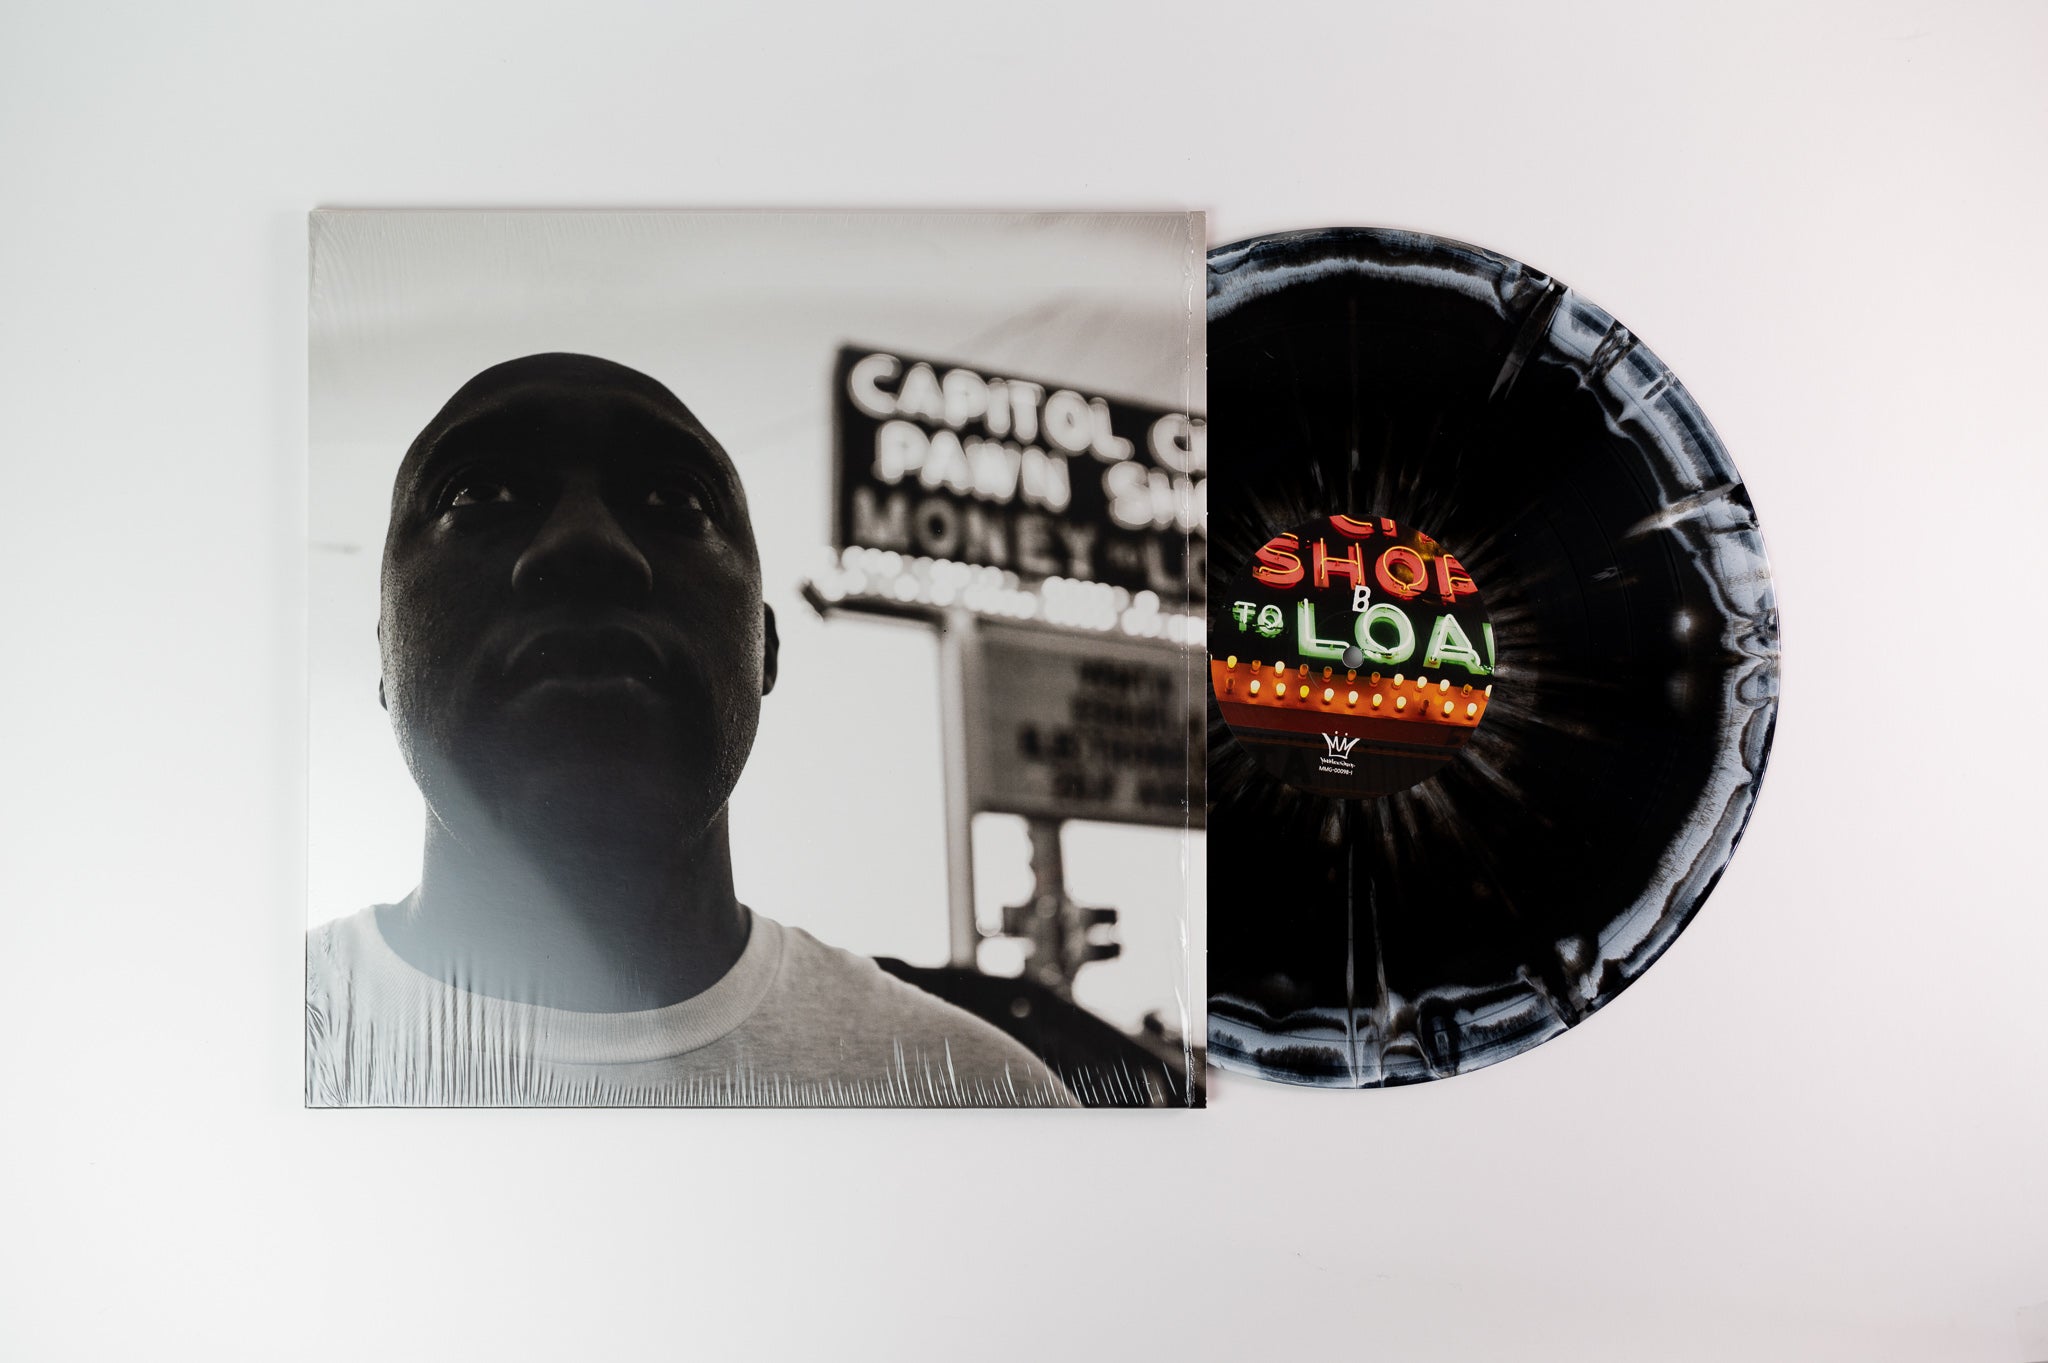 Stik Figa - Central Standard Time on Mello Music Group - Splatter Vinyl